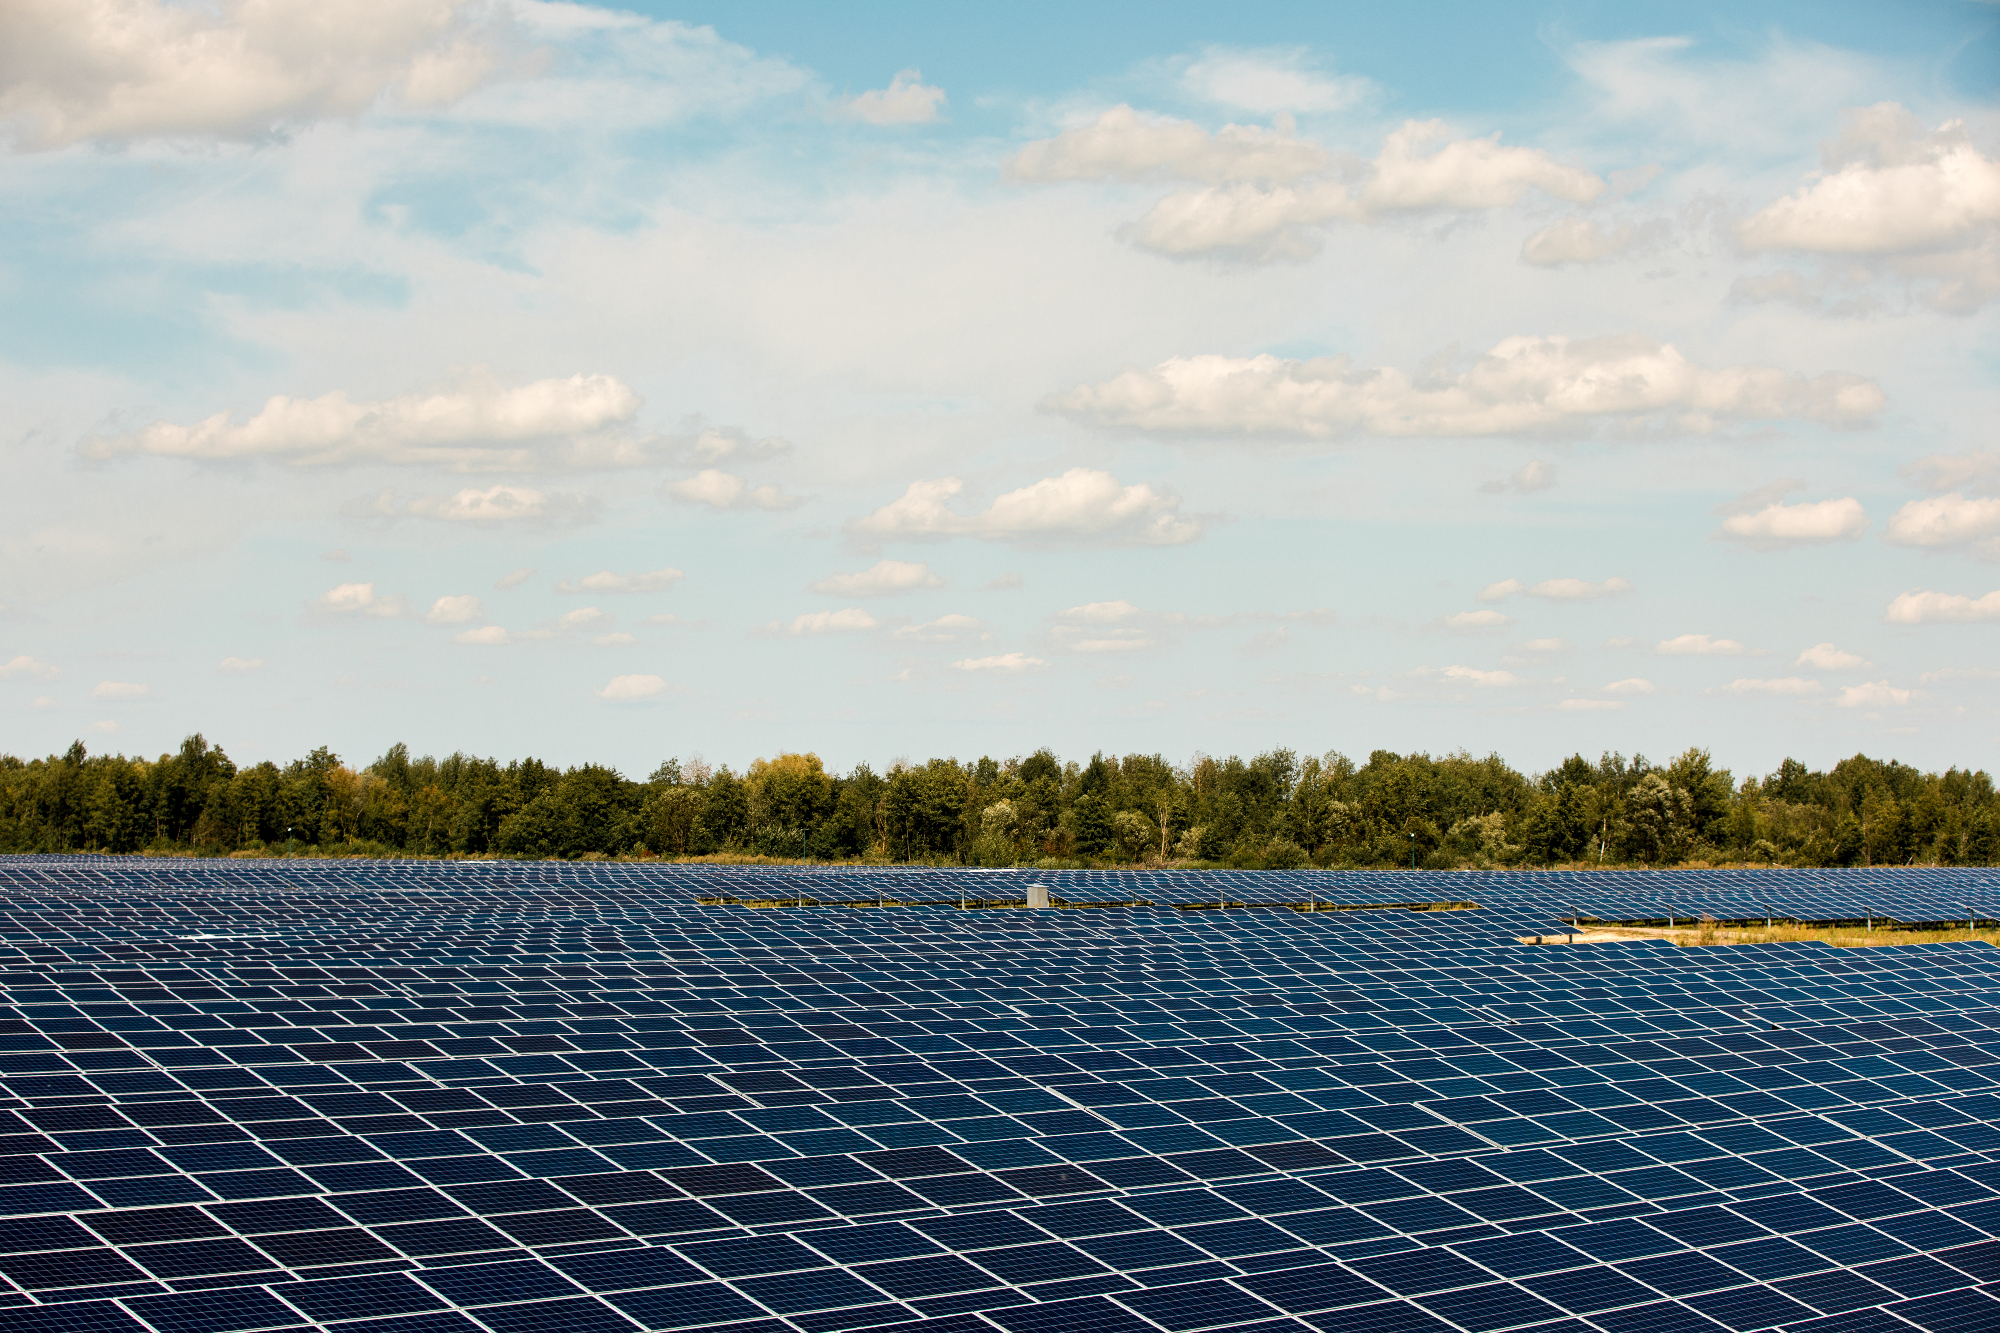 Sončne elektrarne so korak v pravo smer za naš planet